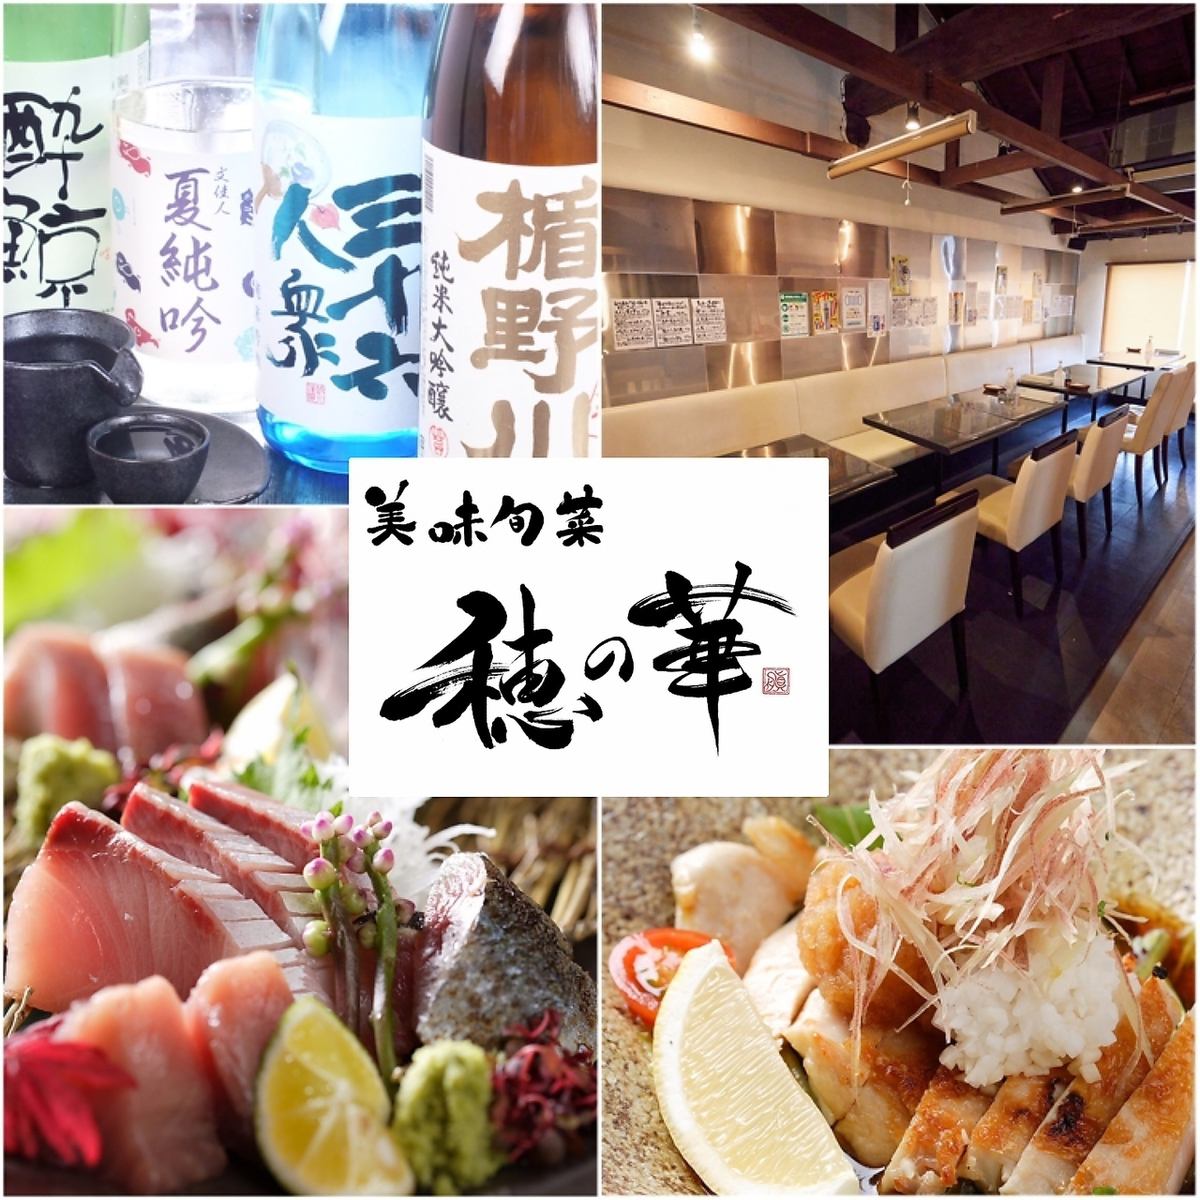 ≪套餐4,400日元〜≫从食材到烹饪方法，从空间到客户服务，我们竭诚为顾客提供款待。